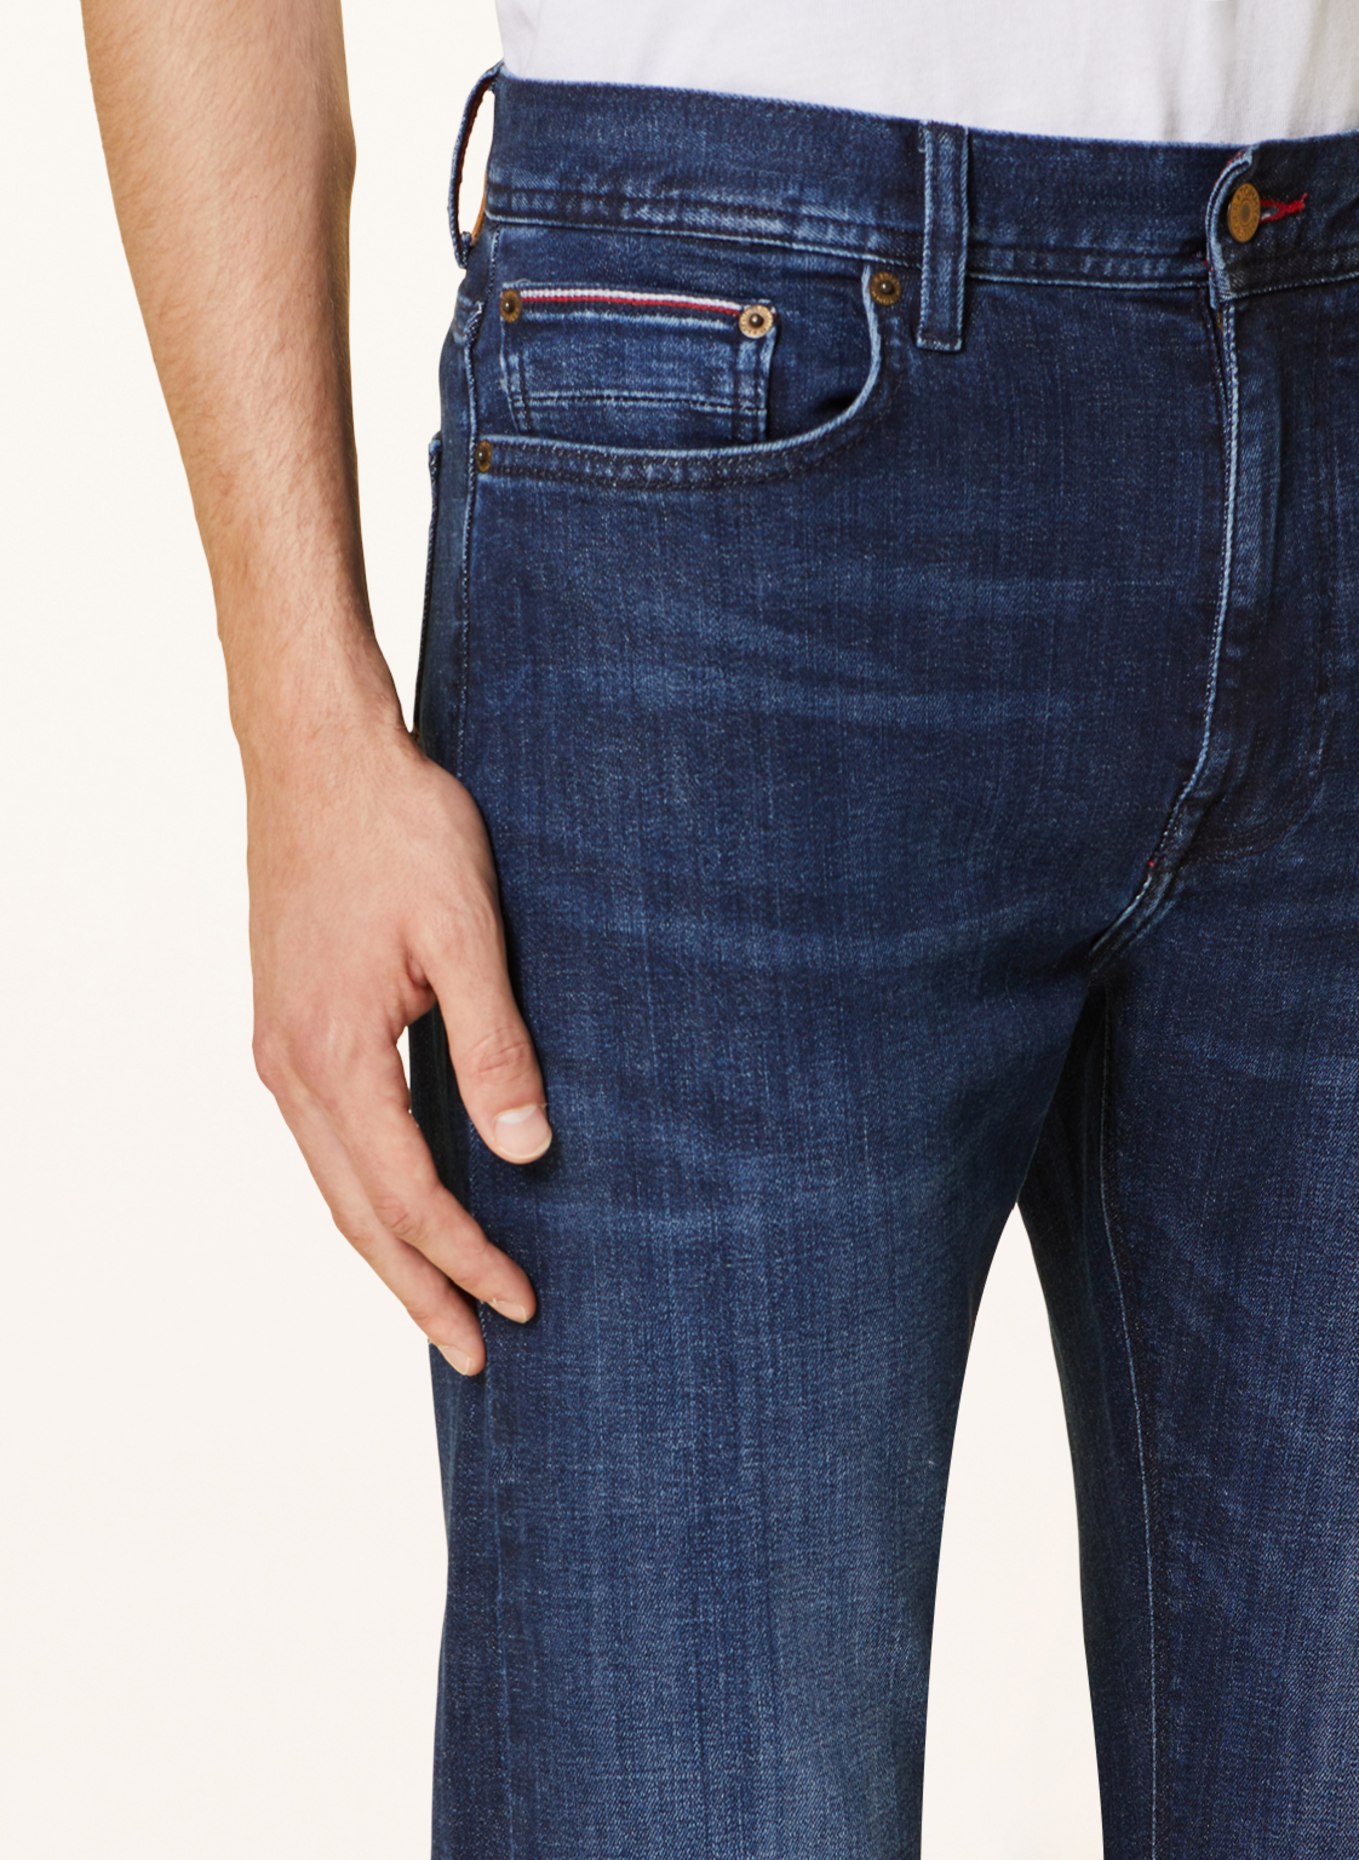 TOMMY HILFIGER Jeans CORE BLEECKER Slim Fit, Farbe: 1BS Bridger Indigo (Bild 6)